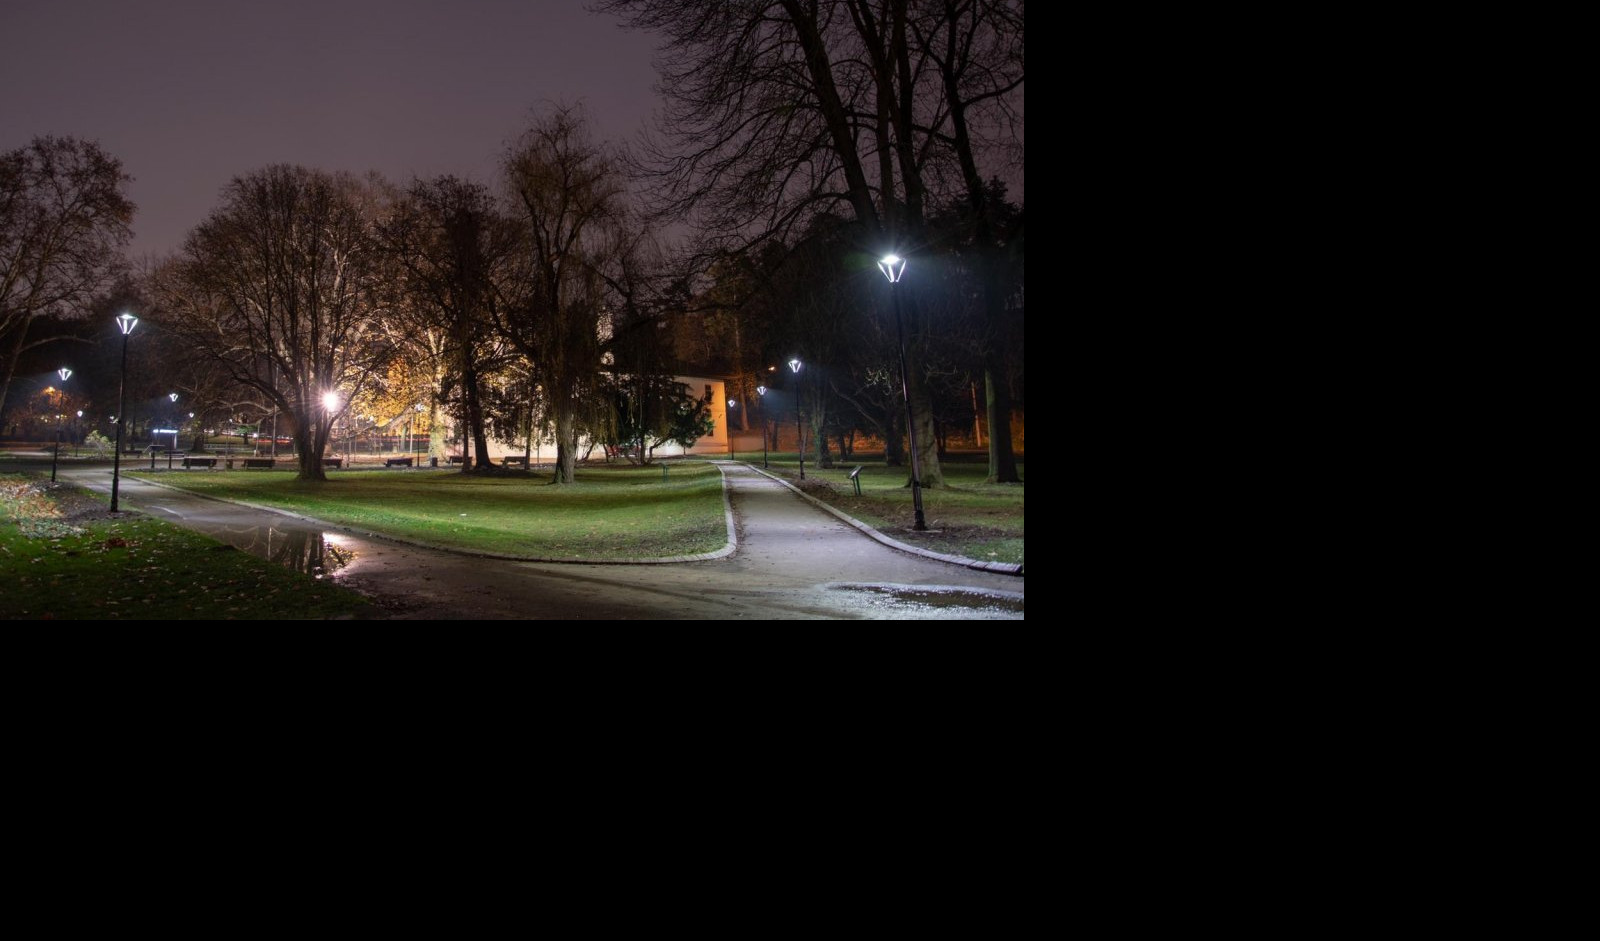 (FOTO) NOVO RUHO TOPČIDERSKOG PARKA! Milošev konak osvetljen sa 41 led svetiljkom na dekorativnim stubovima! ZAISTA DELUJE SVETSKI!